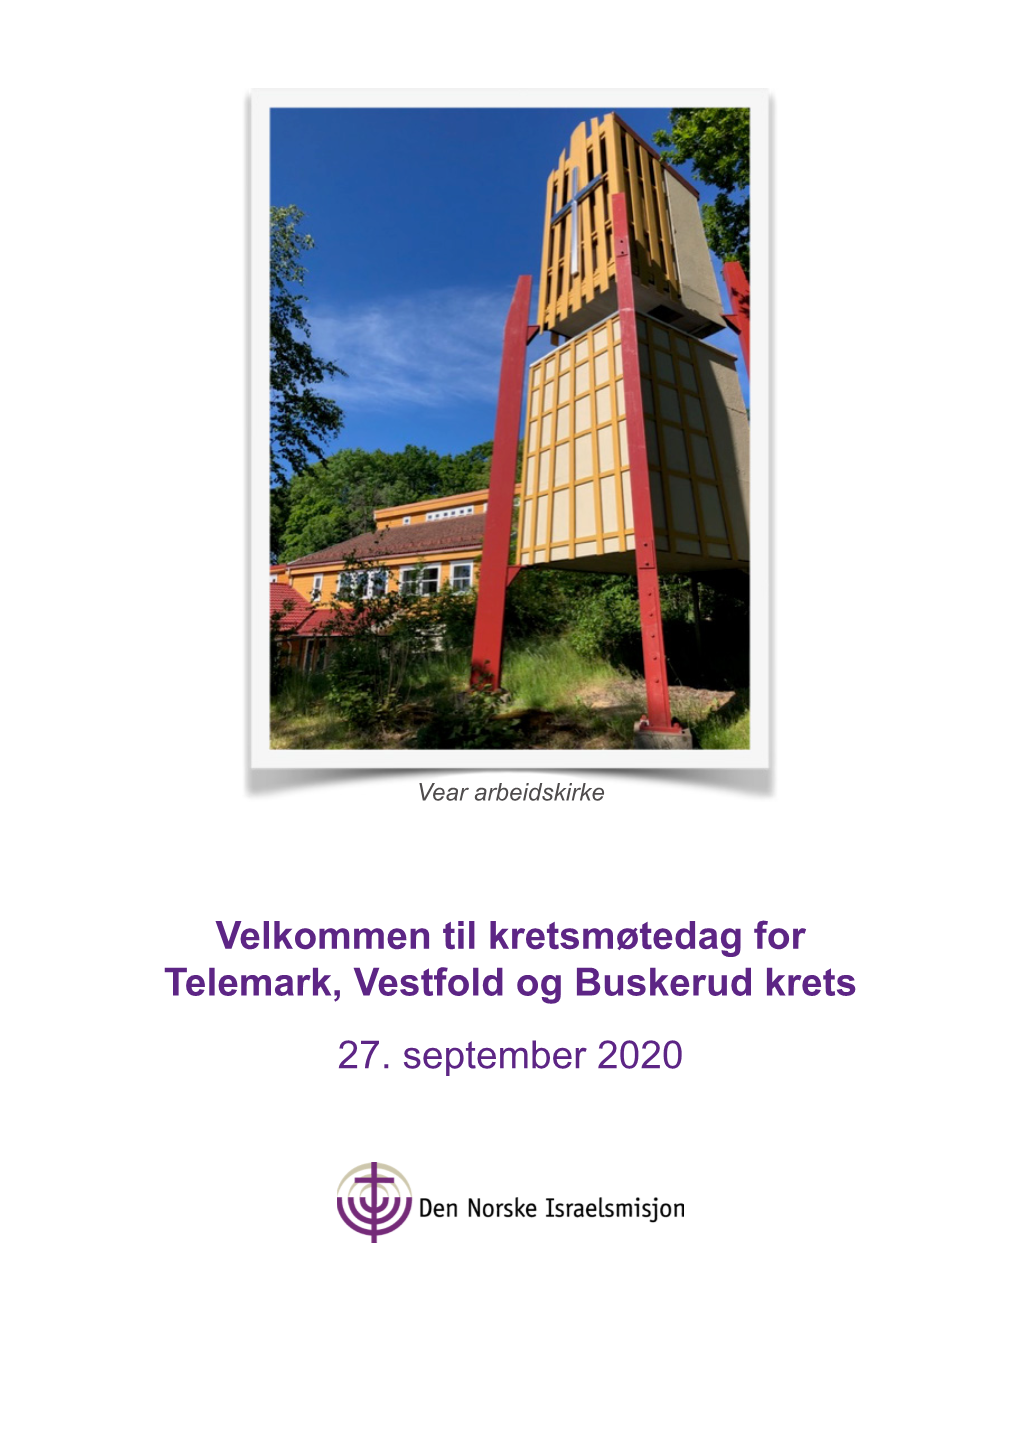 Velkommen Til Kretsmøtedag for Telemark, Vestfold Og Buskerud Krets 27. September 2020 Kretsårsmøtet, 27